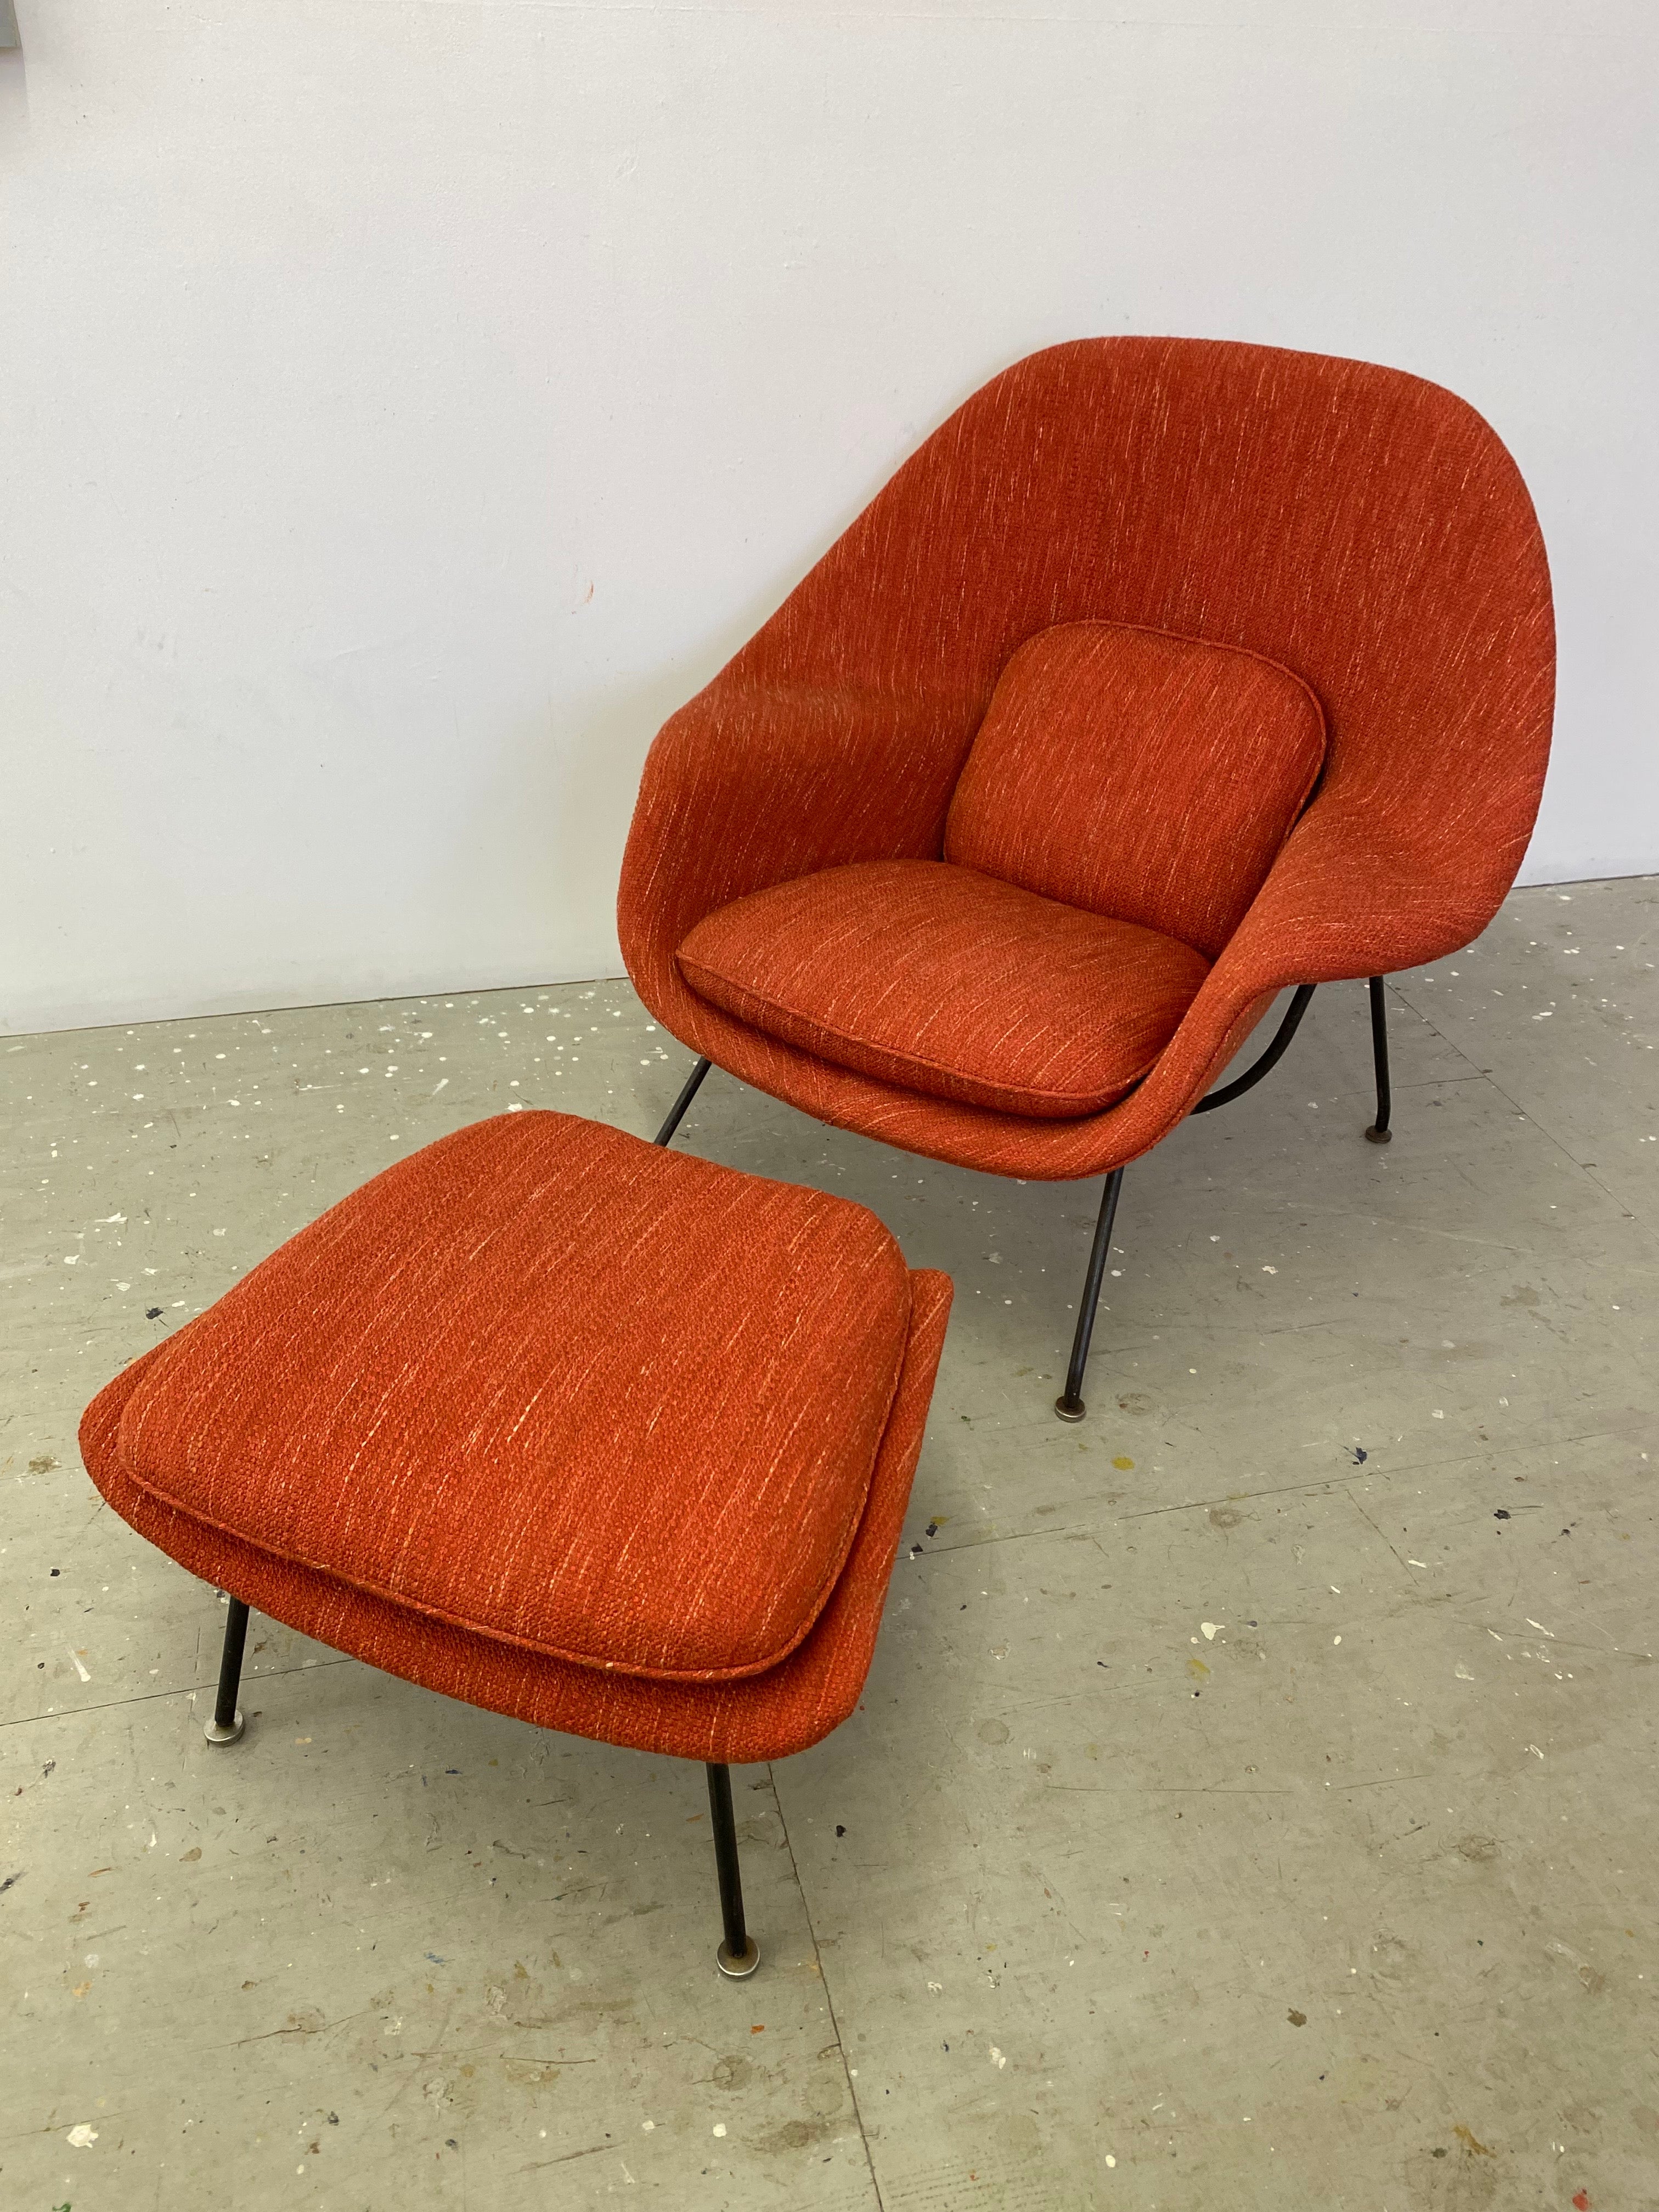 Eero Saarinen for Knoll Womb Chair et ottoman.  Probablement l'une des chaises les plus confortables jamais créées !  Cette chaise et ce pouf datent du milieu des années 60, bien que le design date de 1948.  Les anciens modèles sont fabriqués avec